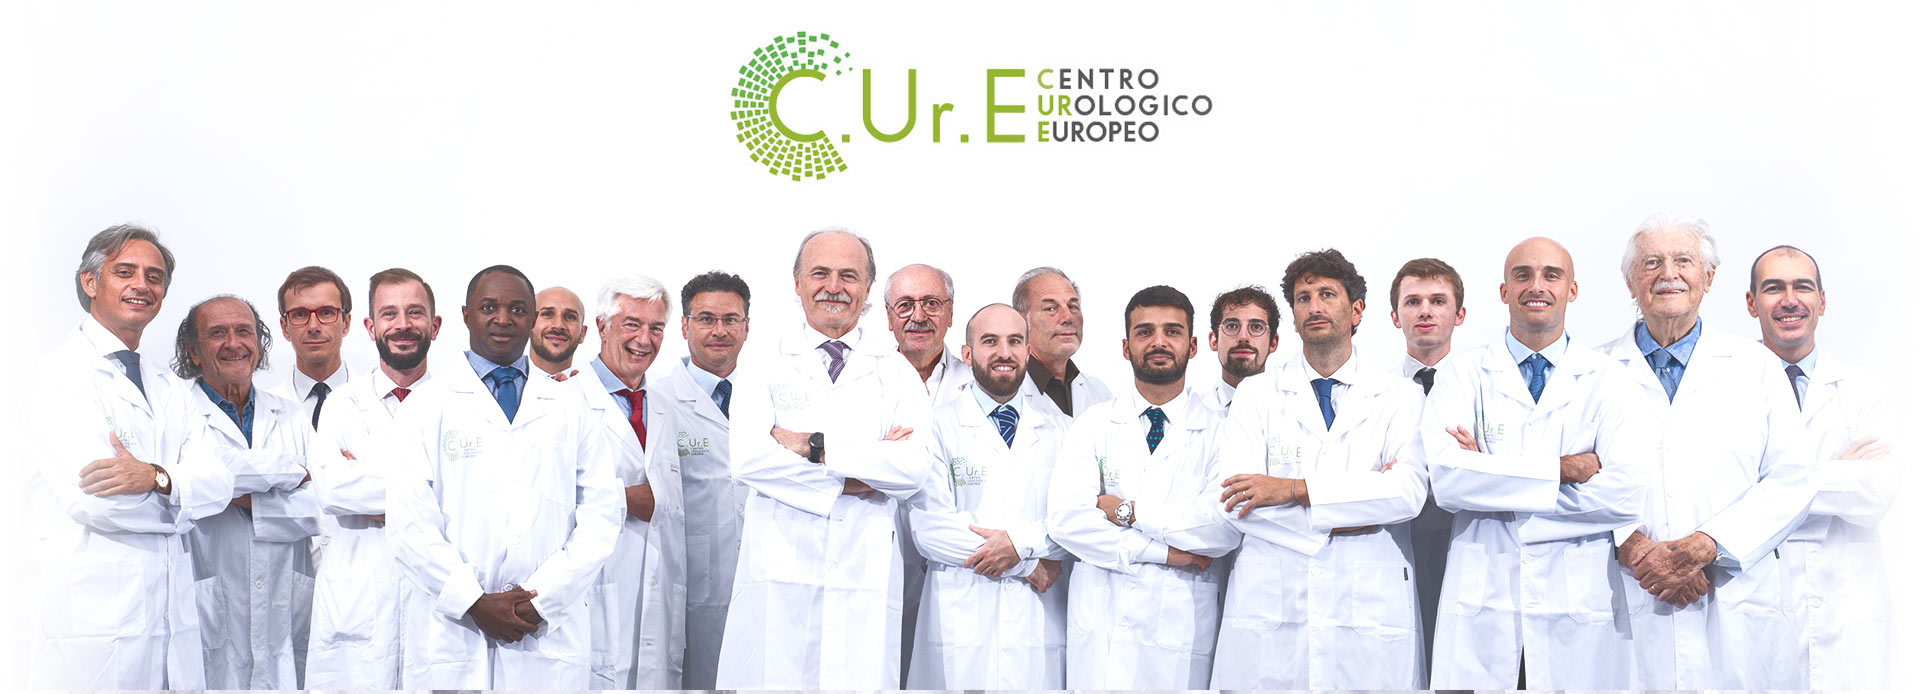 centro urologico europeo